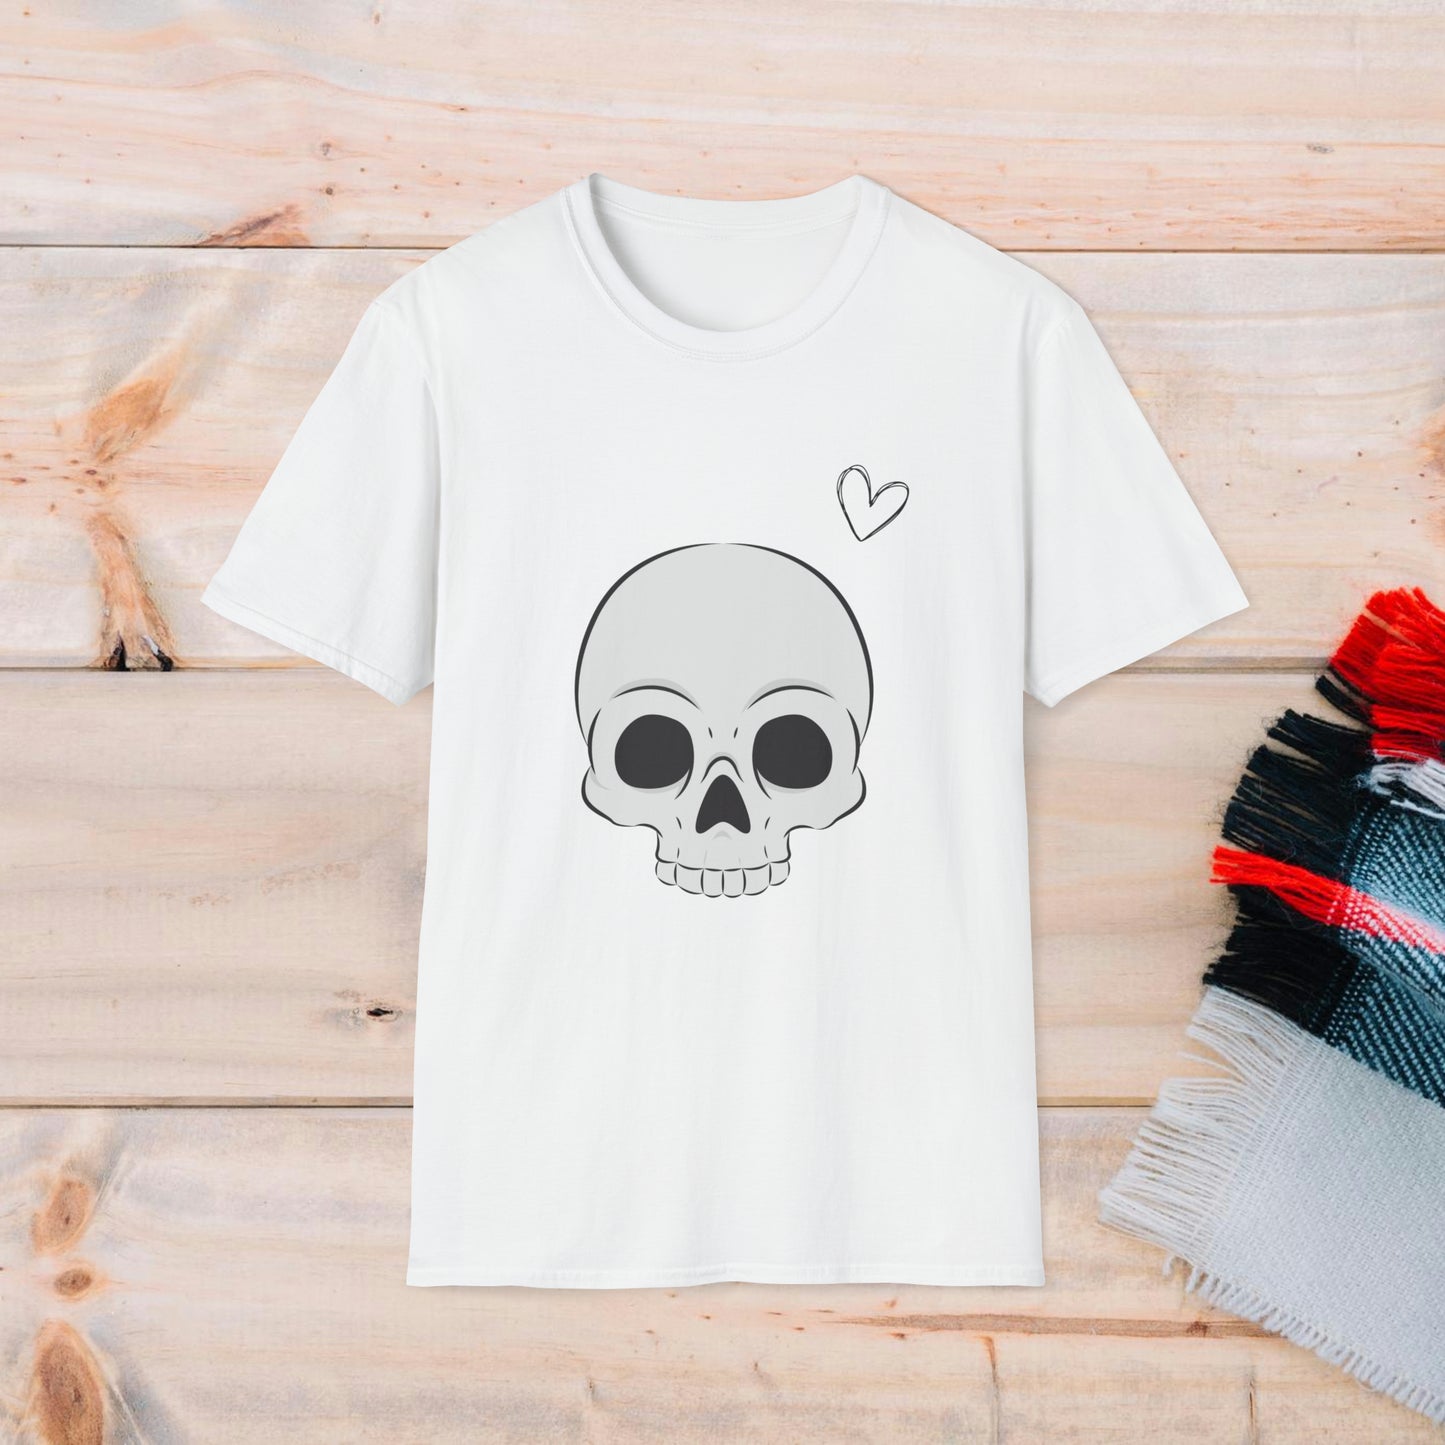 Aesthetic Skull T-shirt